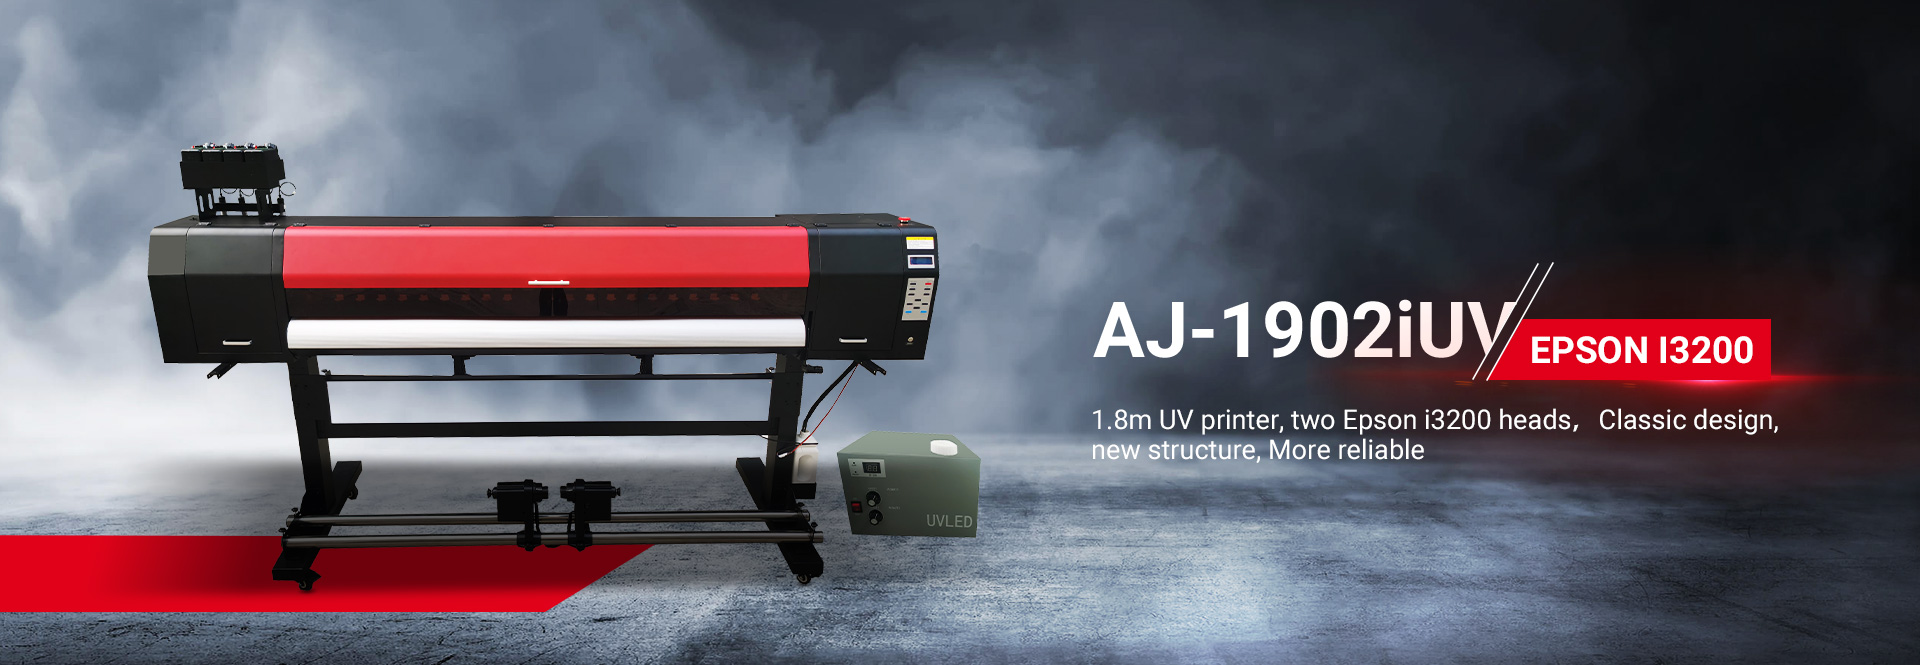 Armyjet uv roll to roll Printer-වඩා විශ්වාසදායකයි